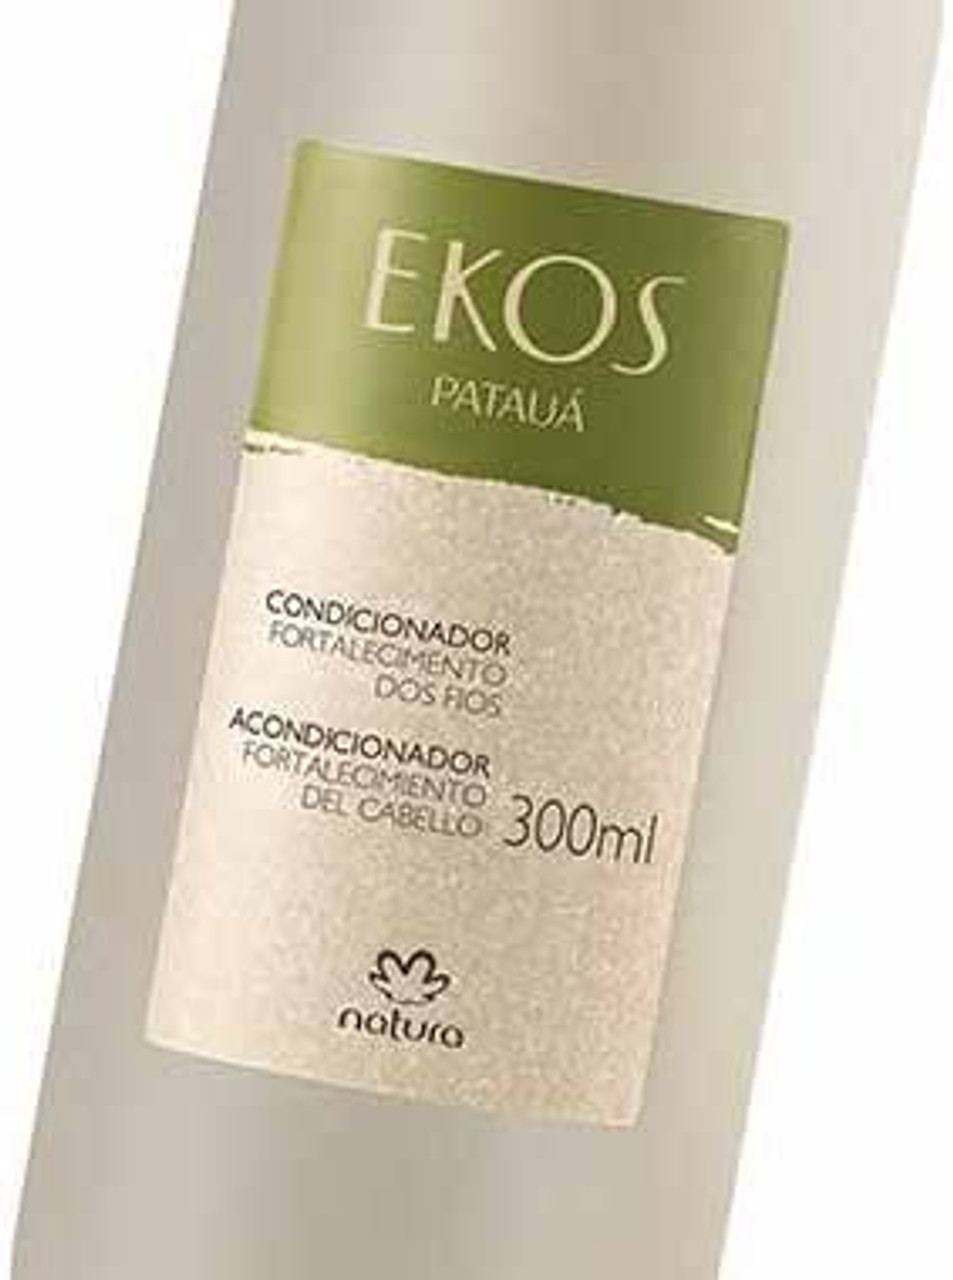 Linha Ekos (Pataua) Natura - Condicionador Fortalecimento dos Fios 300 Ml -  (Natura Ekos (Pataua) Collection - Hair Strenghtening